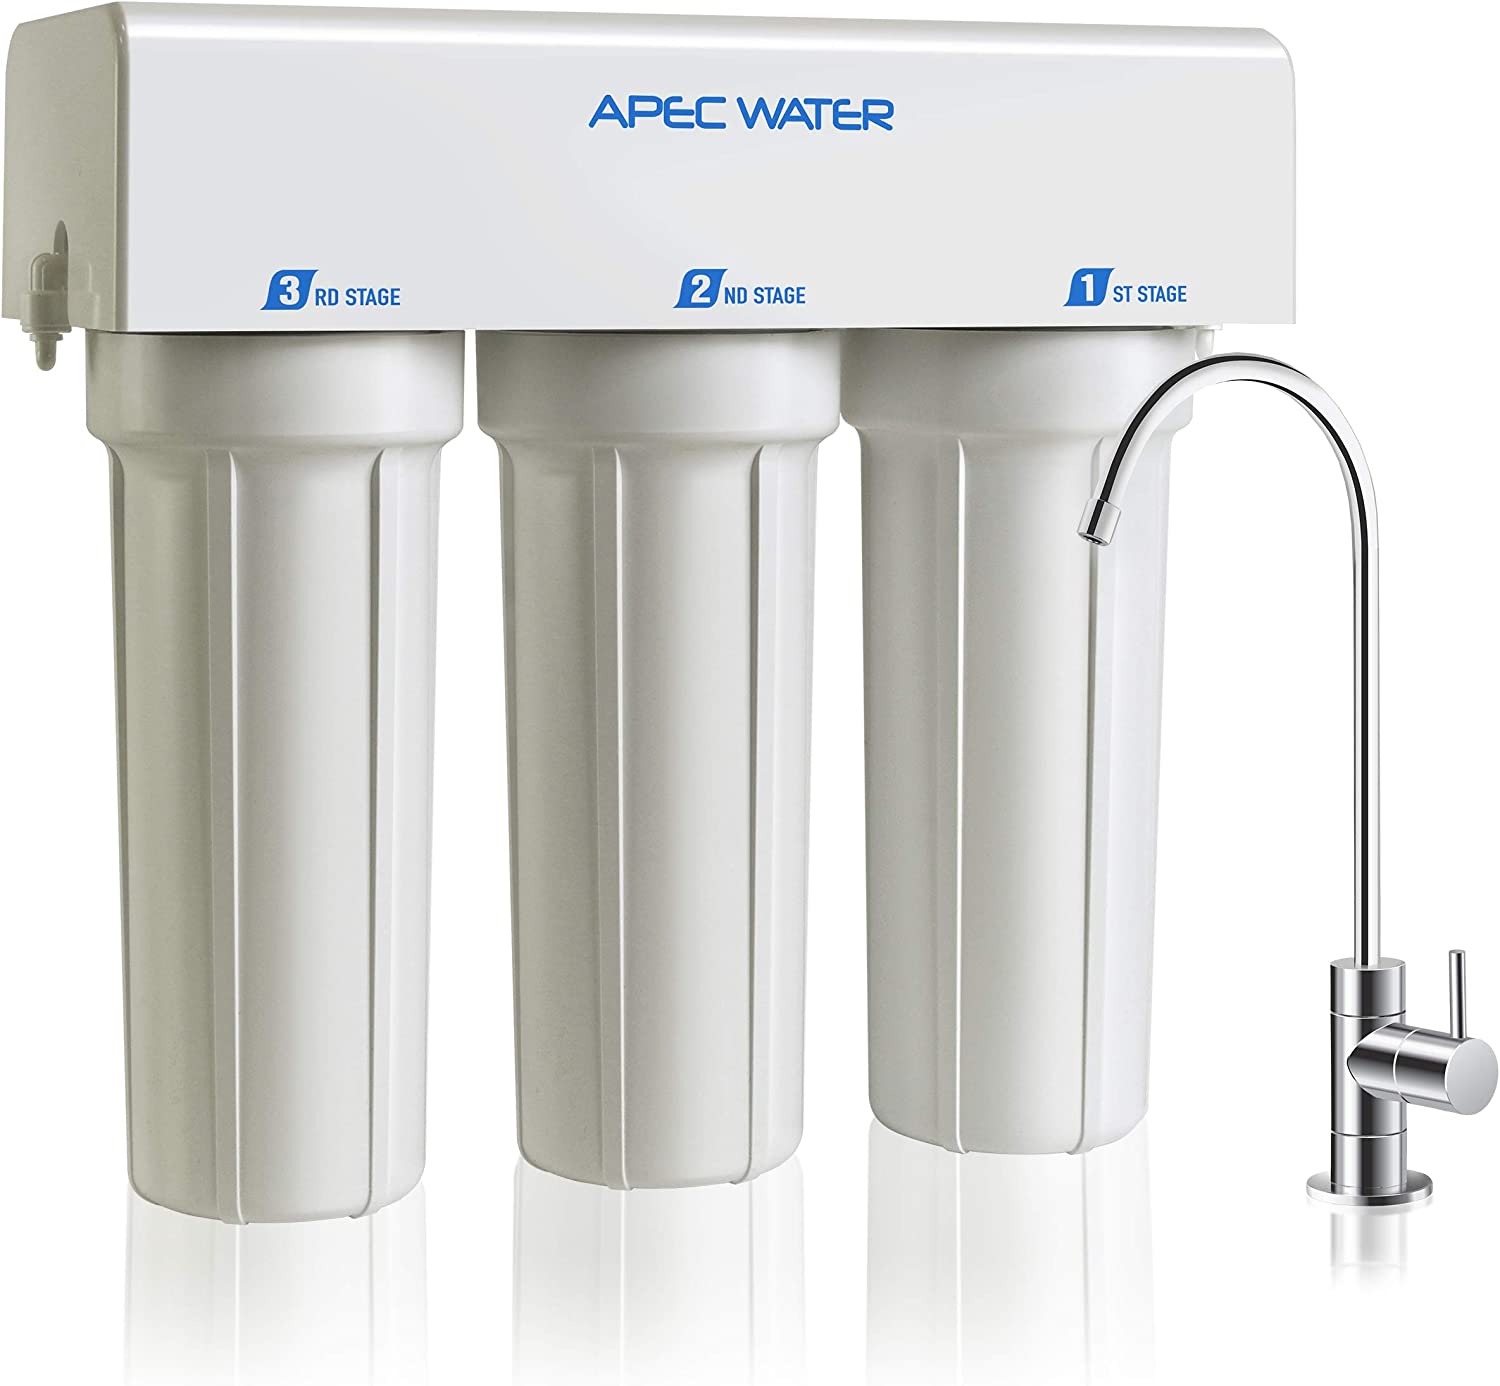 دستگاه تصفیه آب Apec Water Systems مدل WFS-1000 - ارسال ۱۰ الی ۱۵ روز کاری